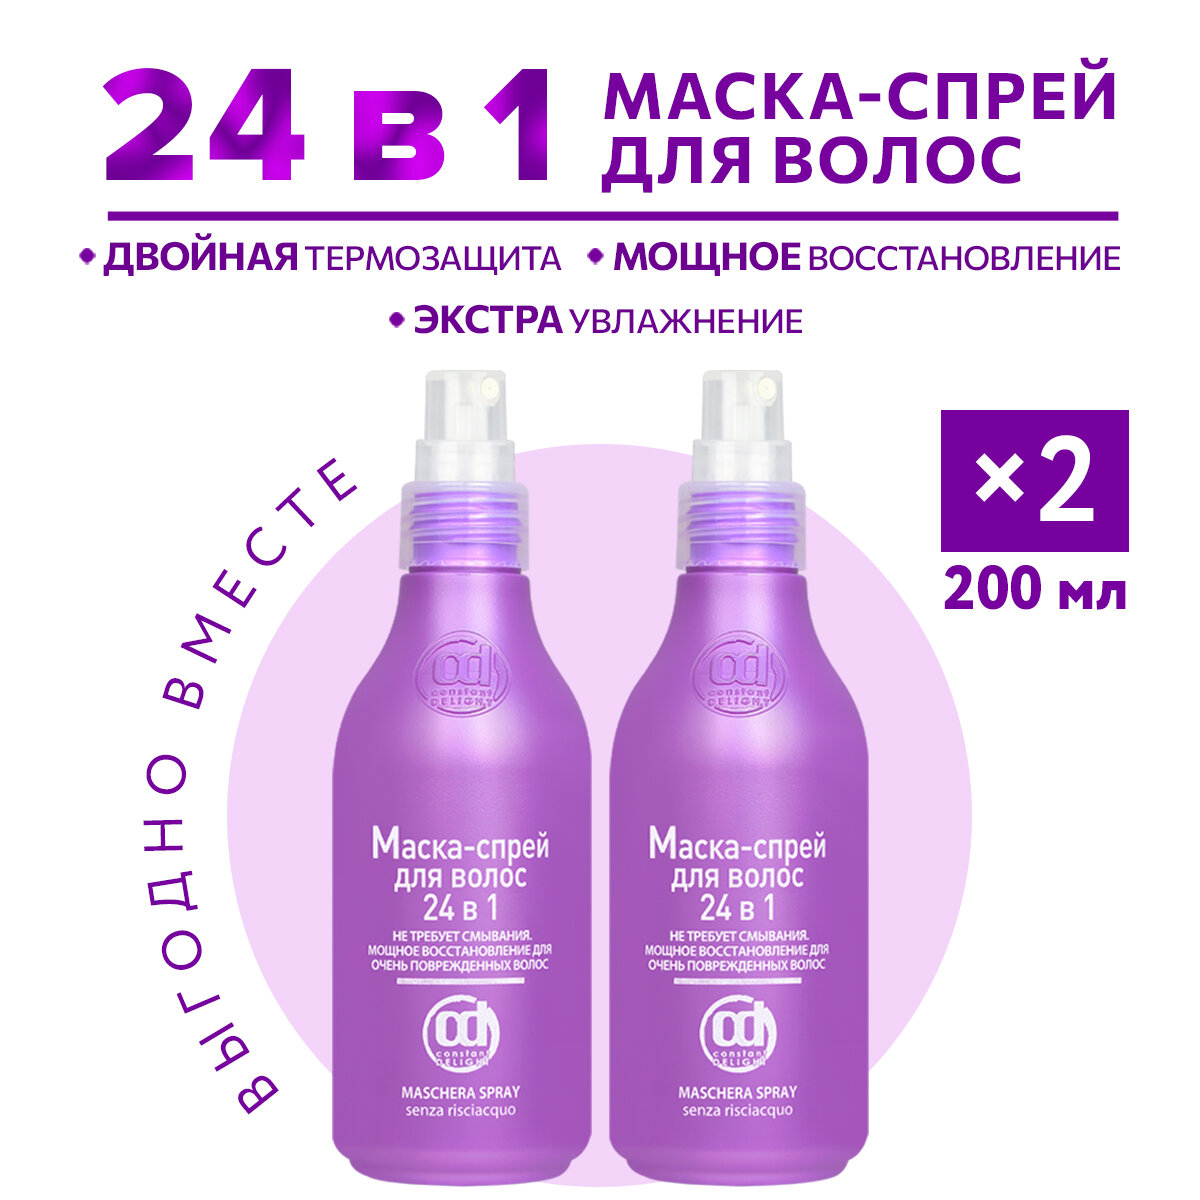 Маска-спрей для восстановления волос CONSTANT DELIGHT 24 в 1 200 мл - 2 шт